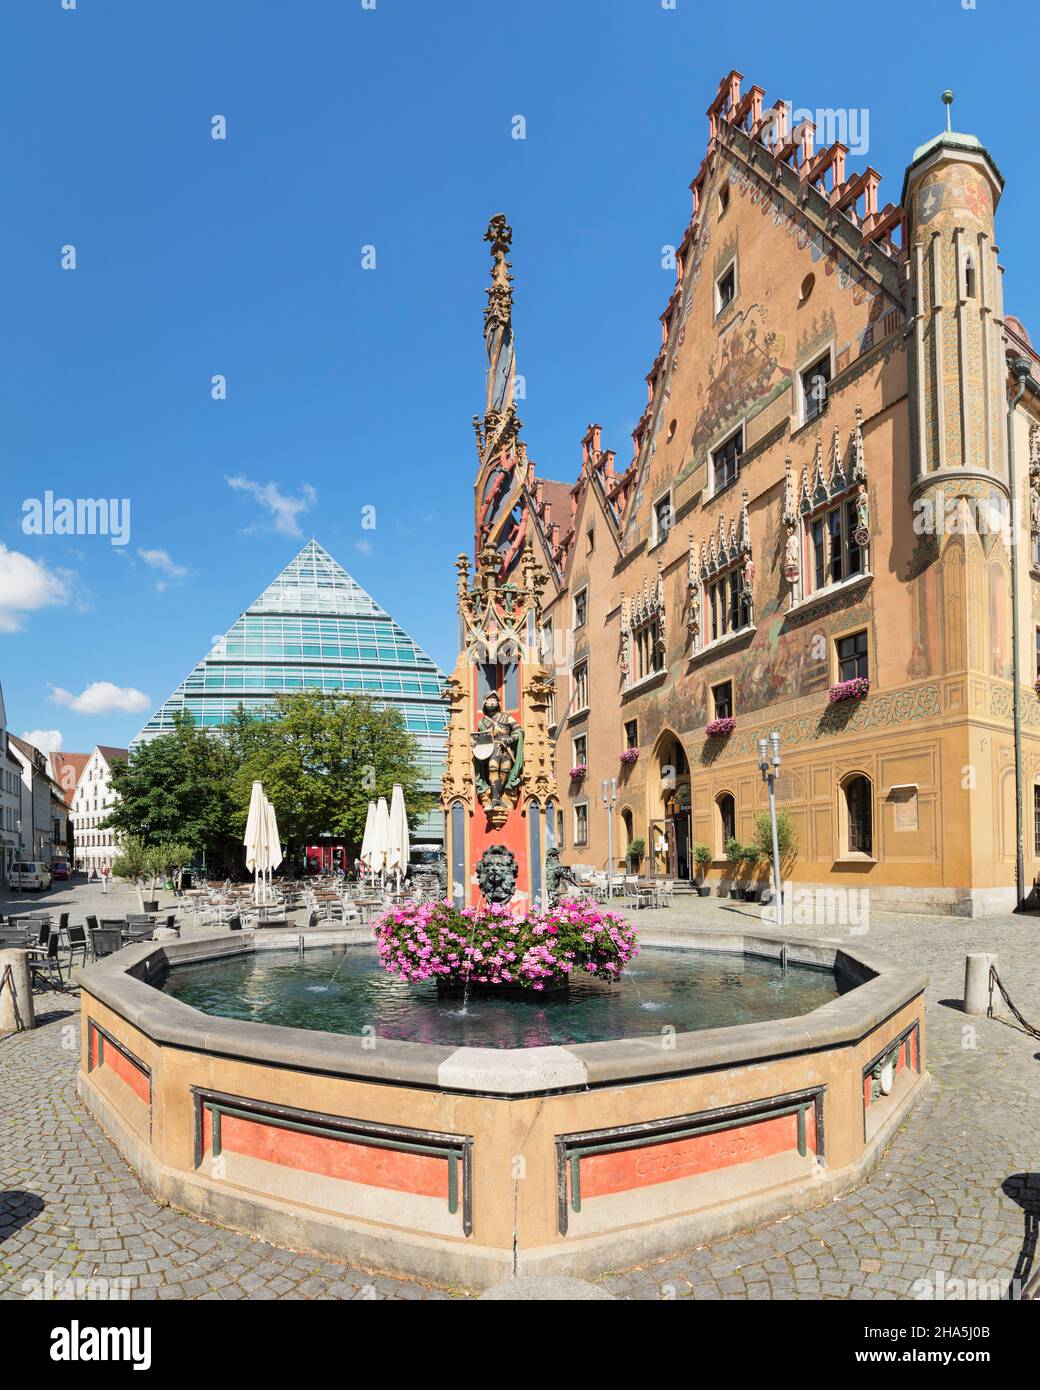 fontaine à l'hôtel de ville sur la place du marché, pyramide de la nouvelle bibliothèque de la ville, ulm an der donau, baden-wuerttemberg, allemagne Banque D'Images